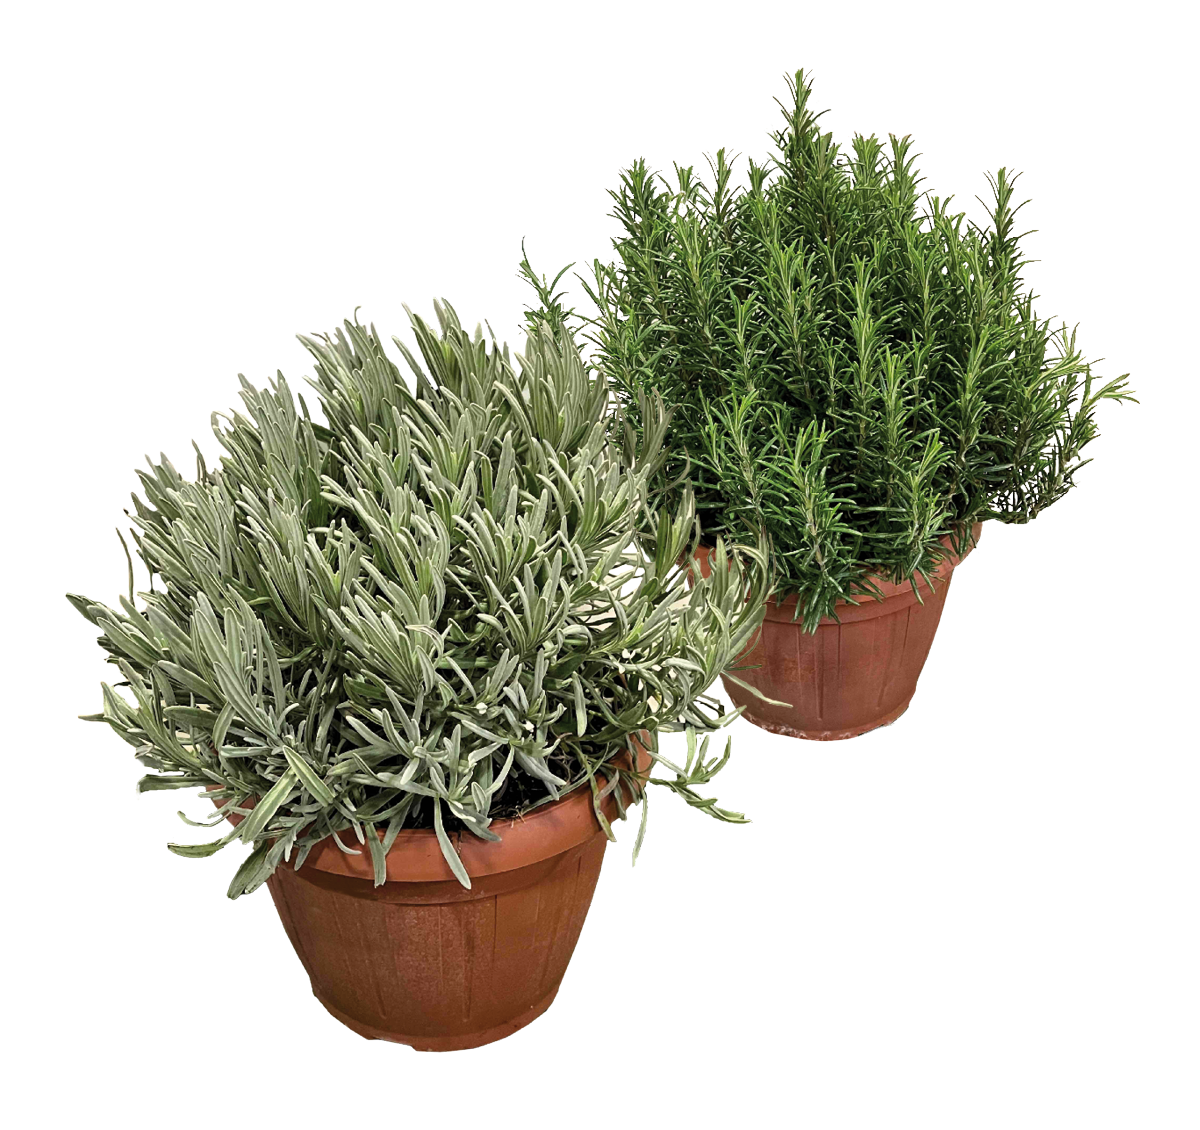 486219-piante aromatiche n vaso-Gewürzpflanzen